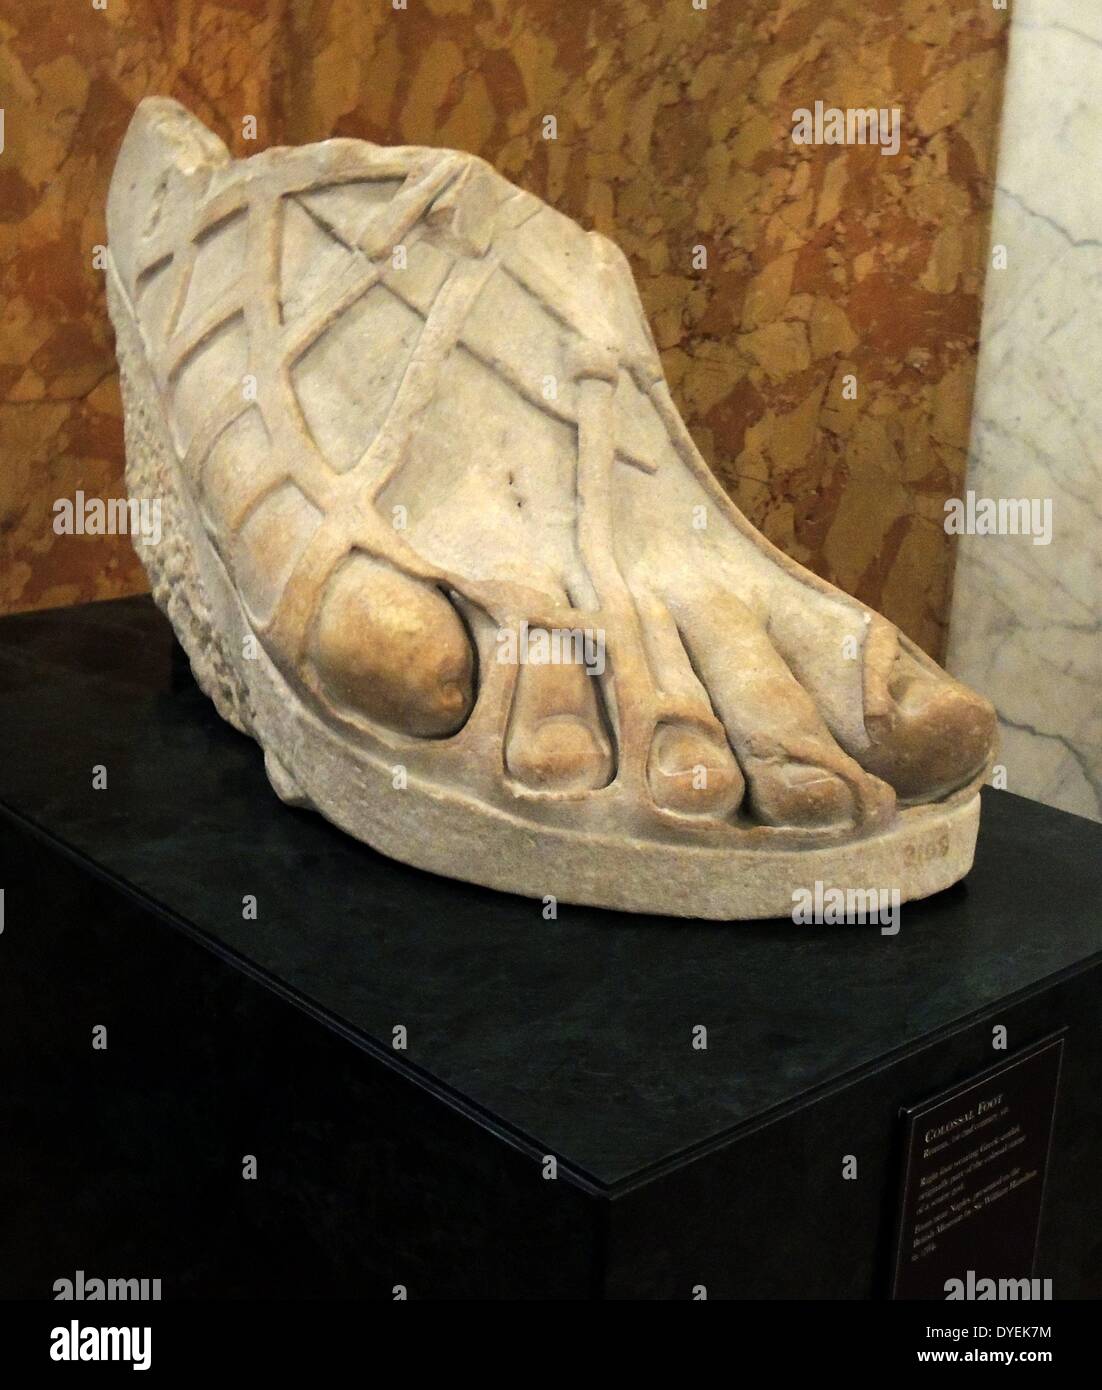 Kolossale Fuß 1. Jh. N.CHR. rechten Fuß trägt eine griechische Sandale. Dachte, Teil eines kolossalen Statue eines Gottes gewesen zu sein. Stockfoto